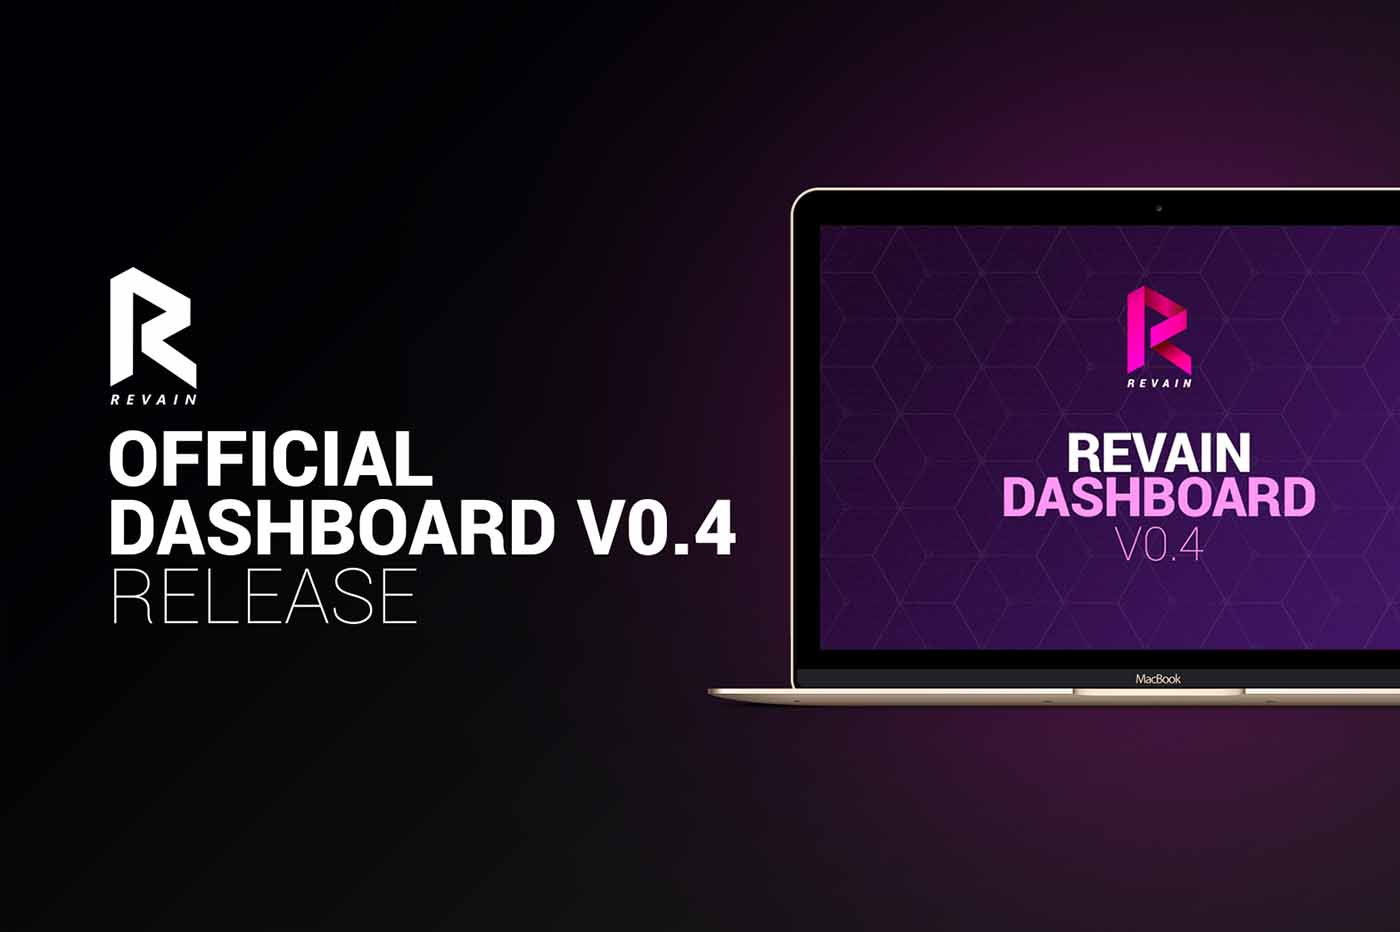 Article Revain announces platform’s v0.4 release